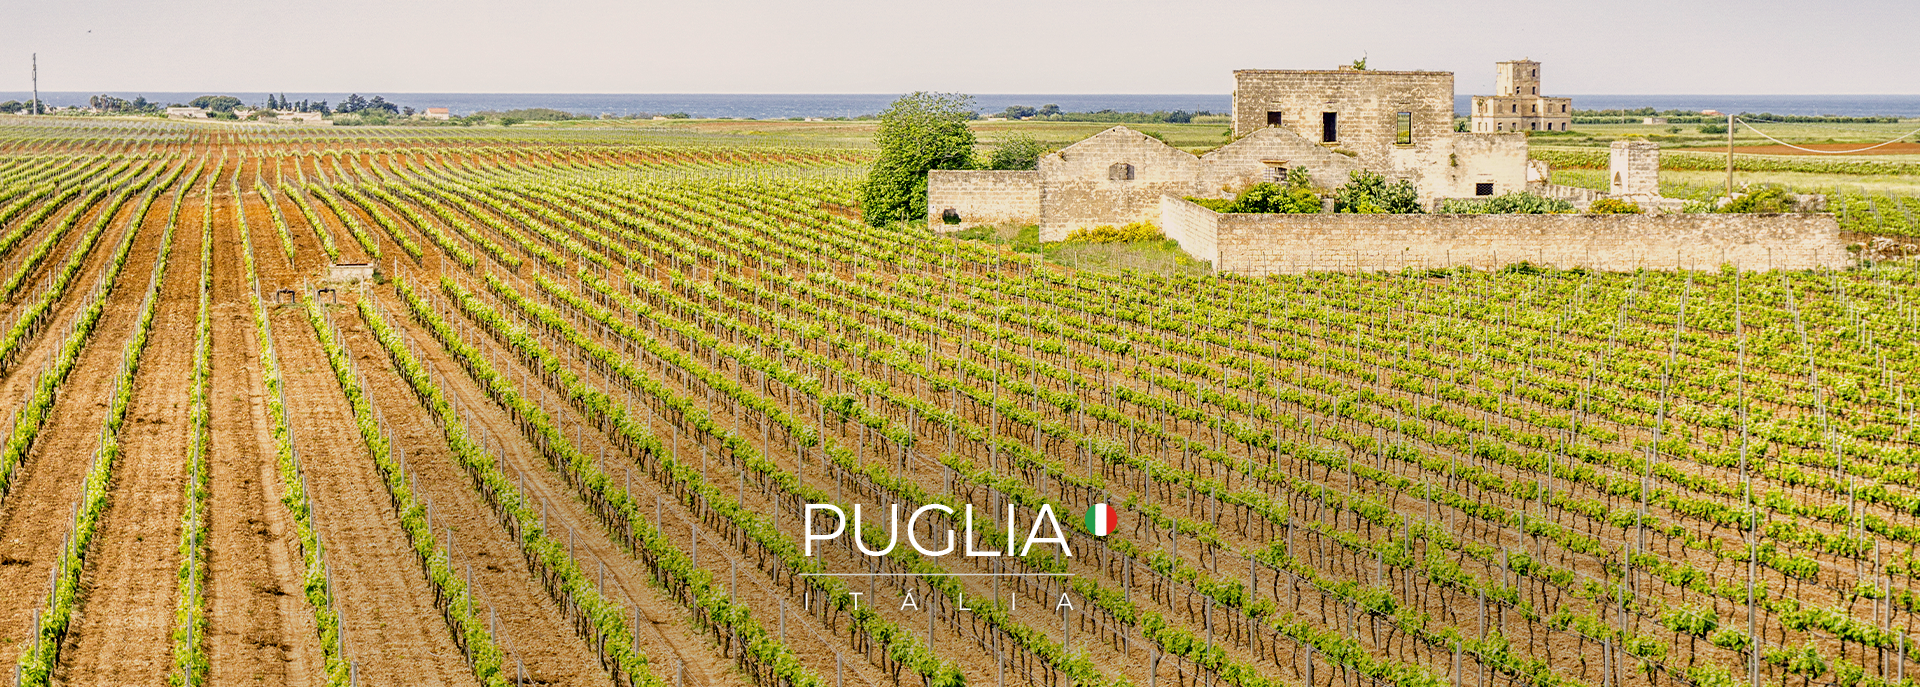 Puglia - Italia